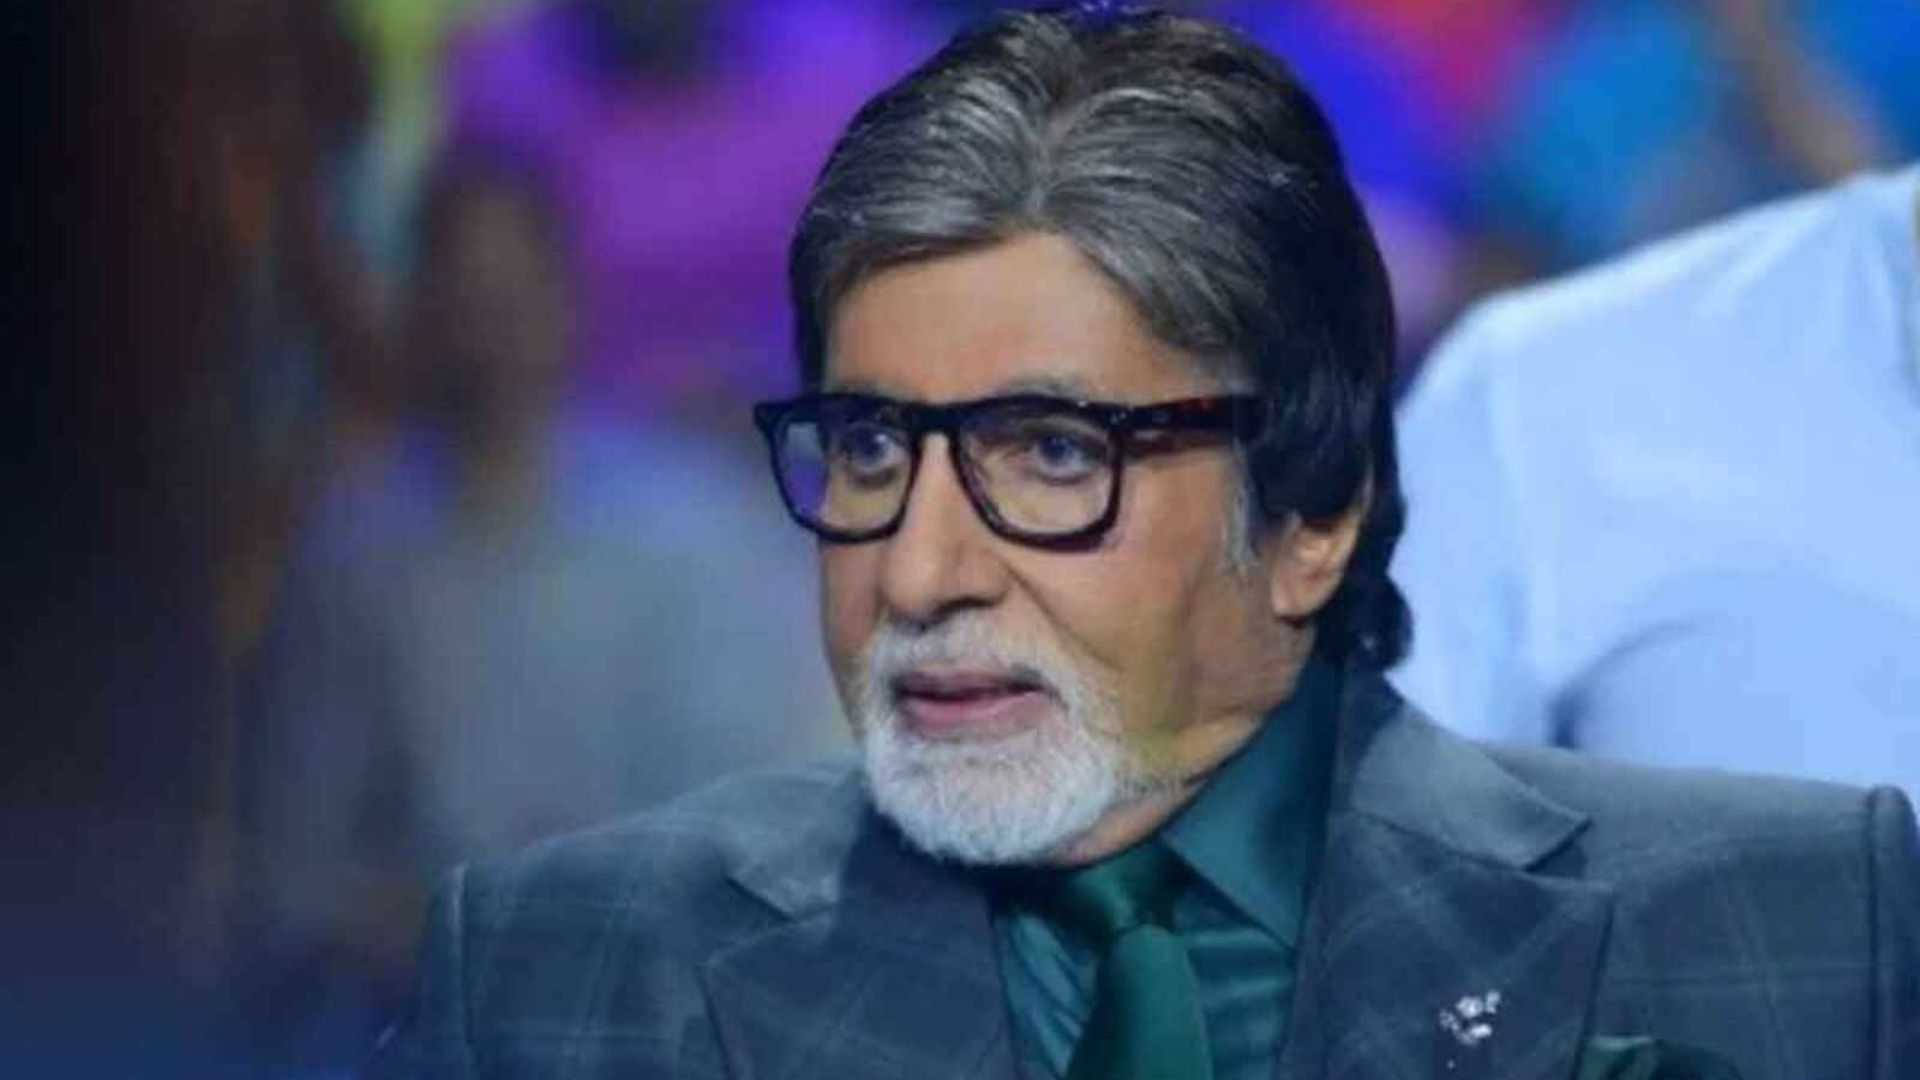 अमिताभ बच्चन ने अपने ट्रैक पर की धमाकेदार वापसी, प्रोजेक्ट के की शूटिंग के दौरान हुए थे घायल